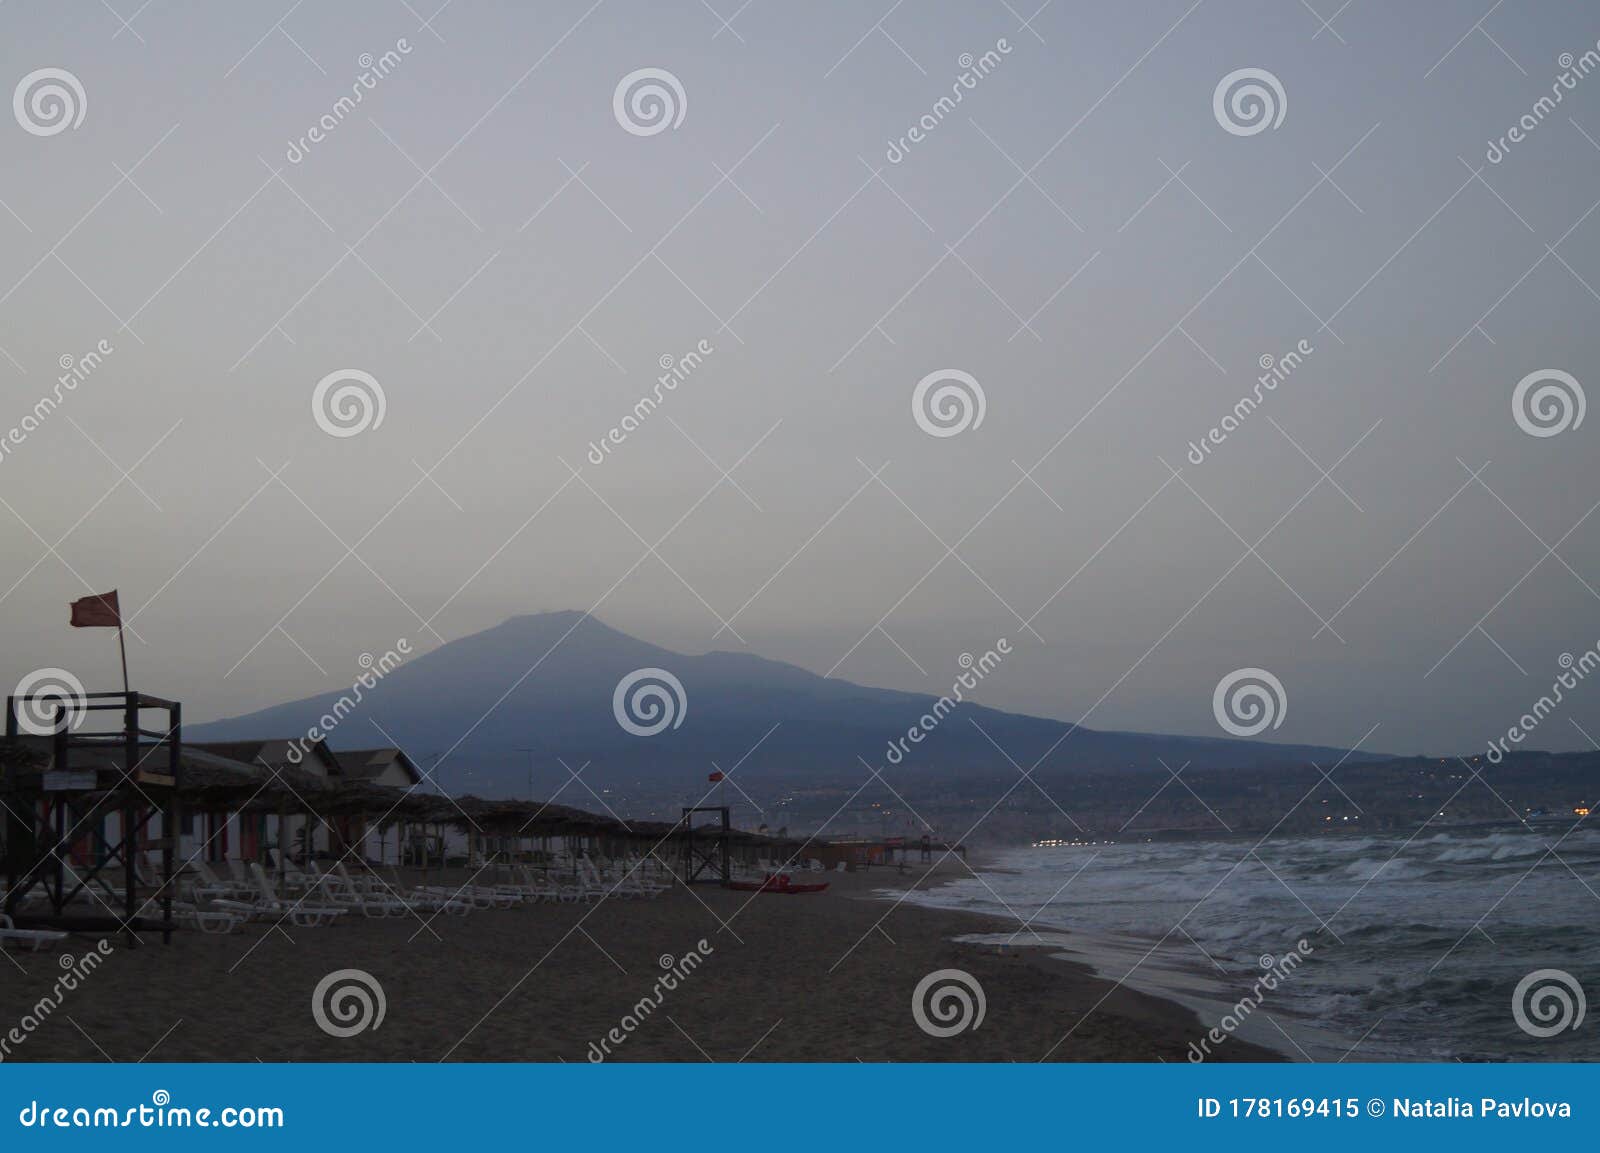 beach in the evening near villaggio  turistico europa. catania, sicily, italy